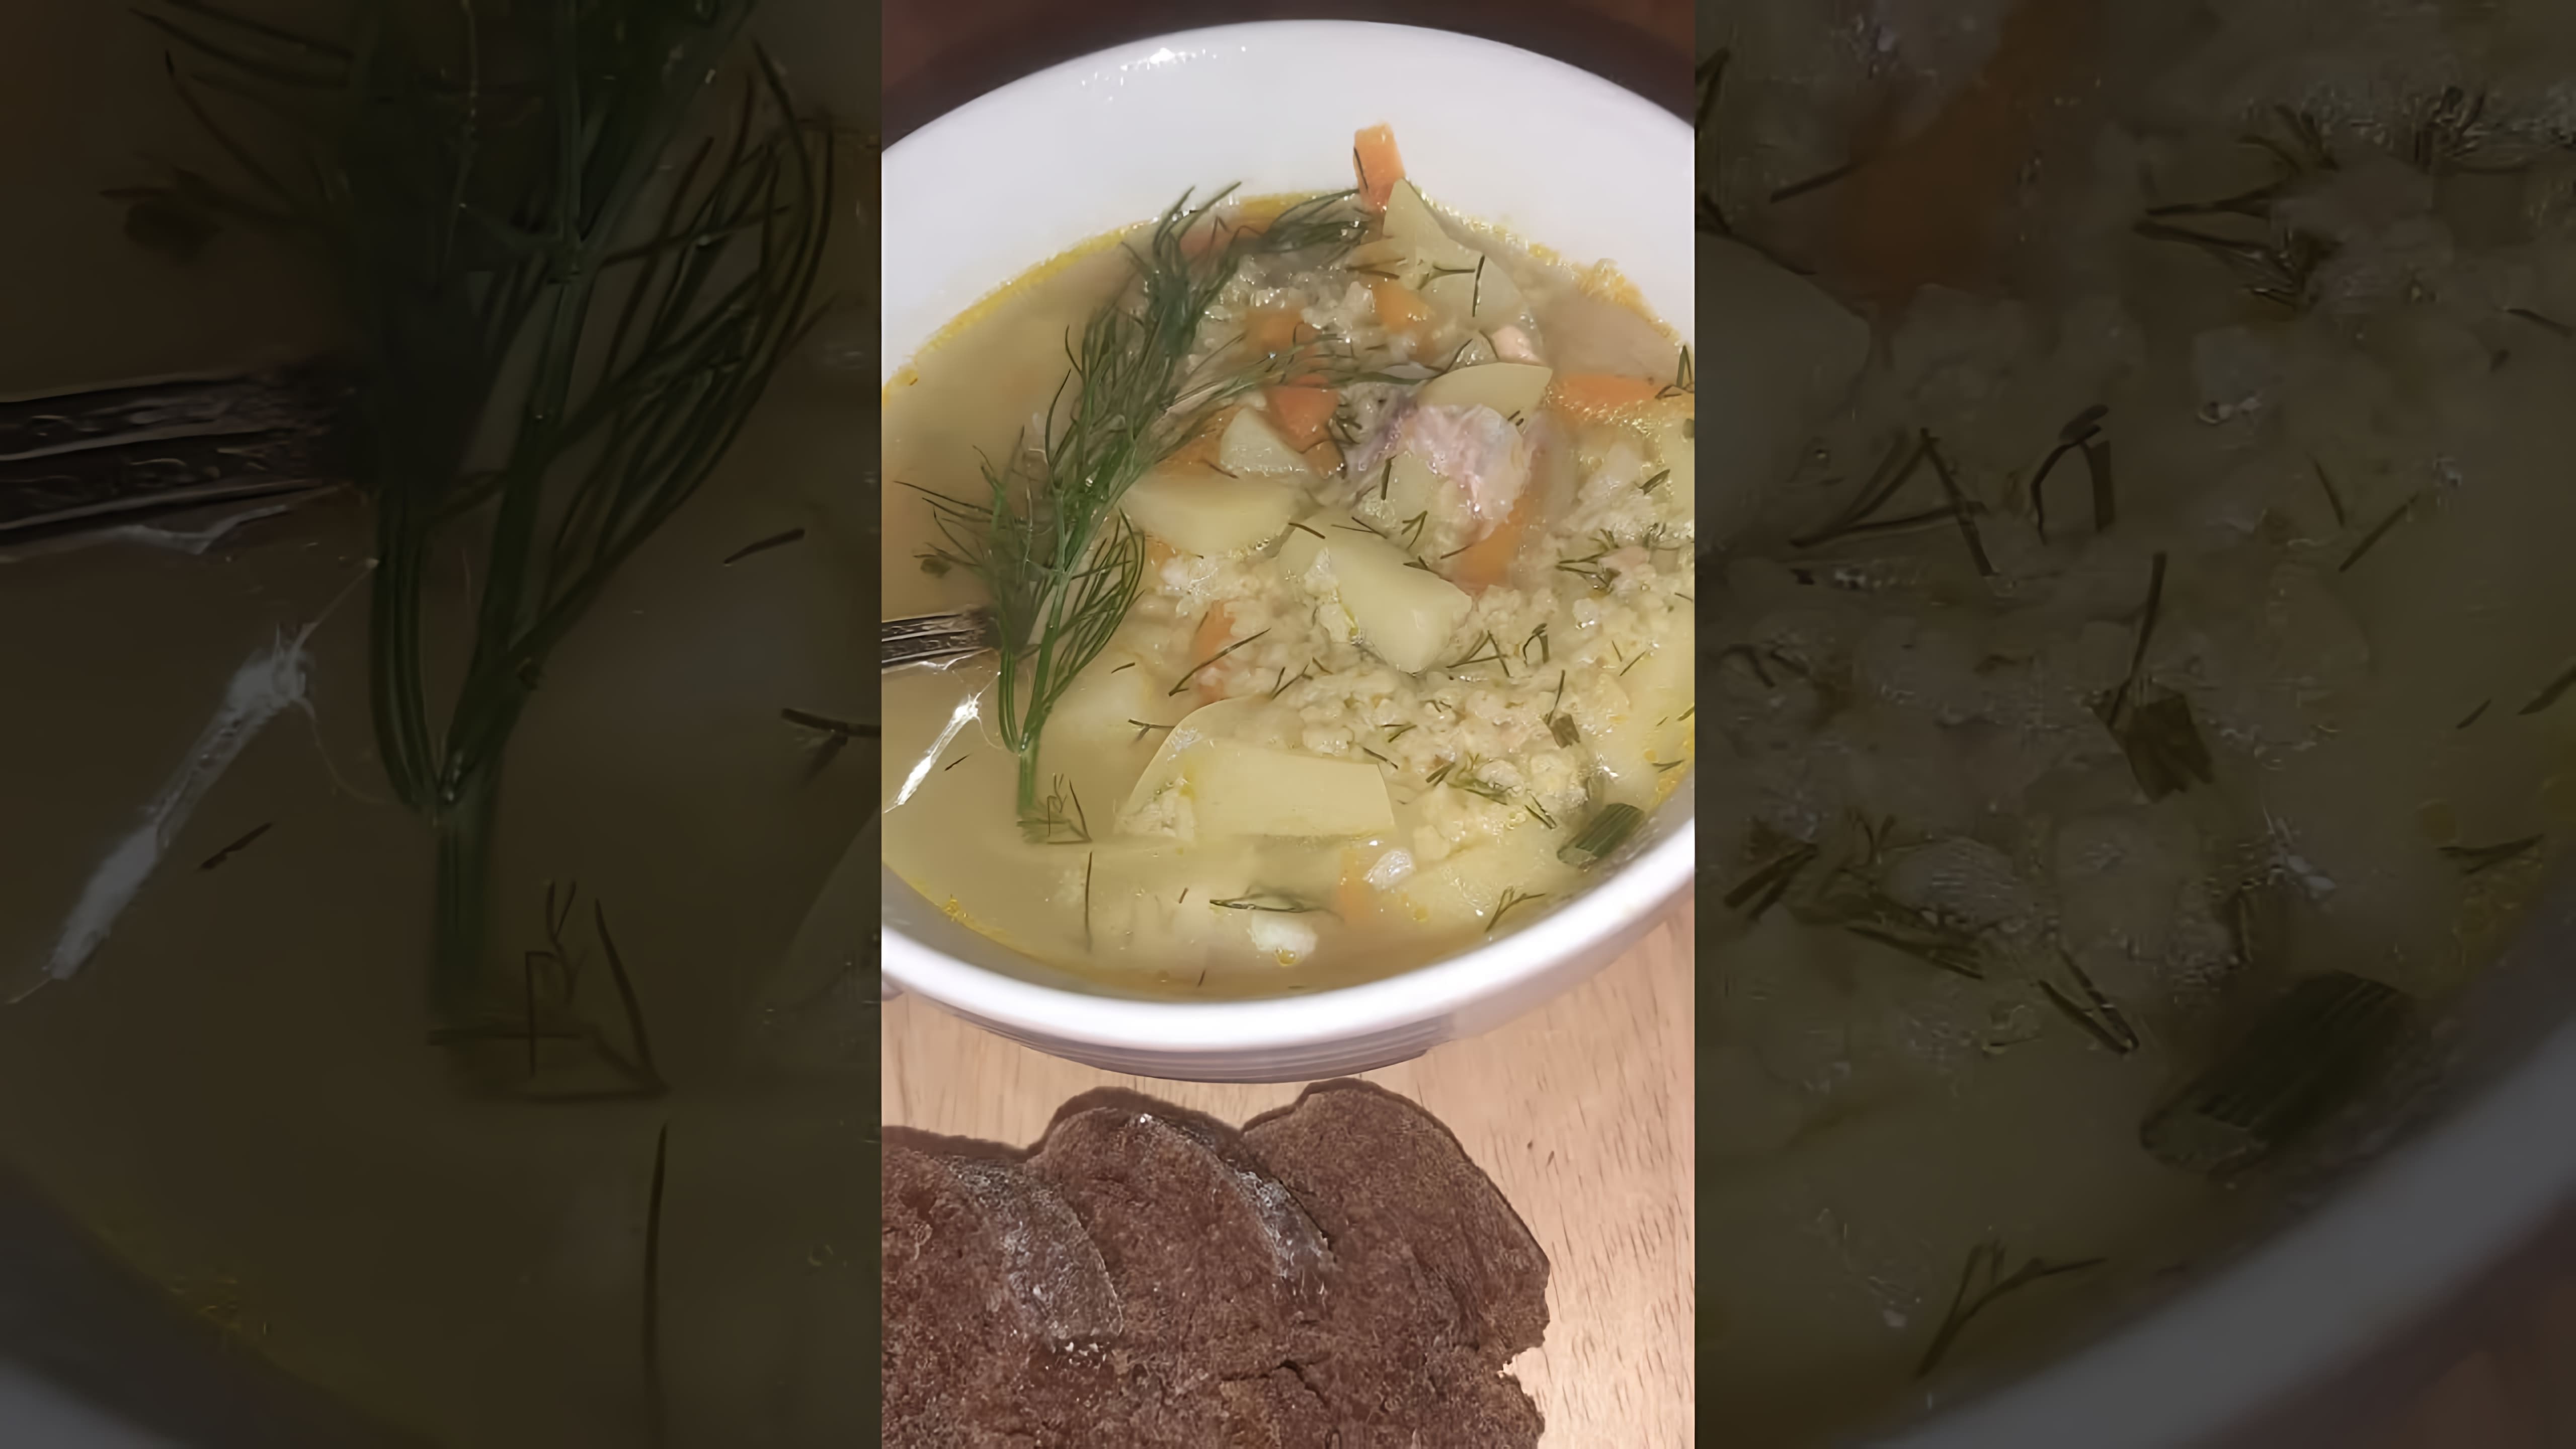 "Простой рецепт рыбного супа" - это видео-ролик, который демонстрирует процесс приготовления вкусного и питательного рыбного супа